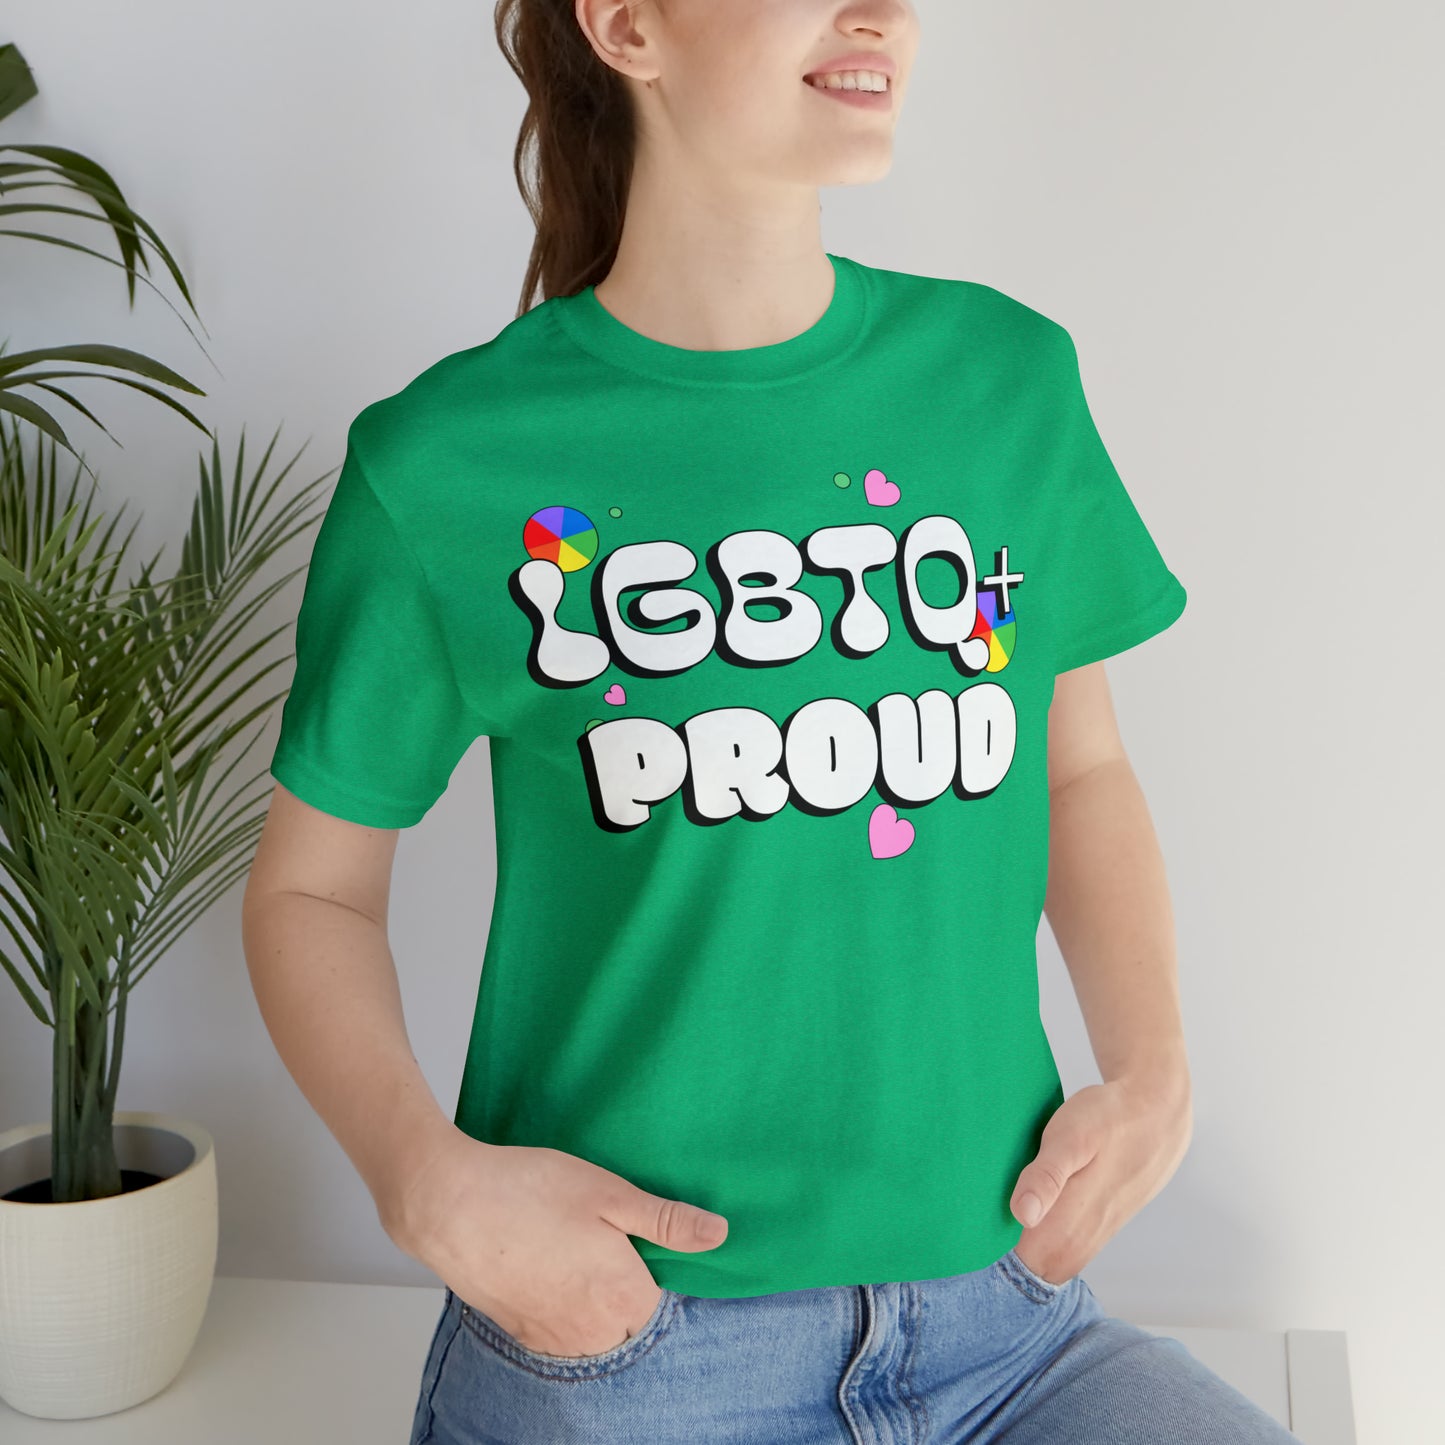 LGBTQ+ T-Shirt